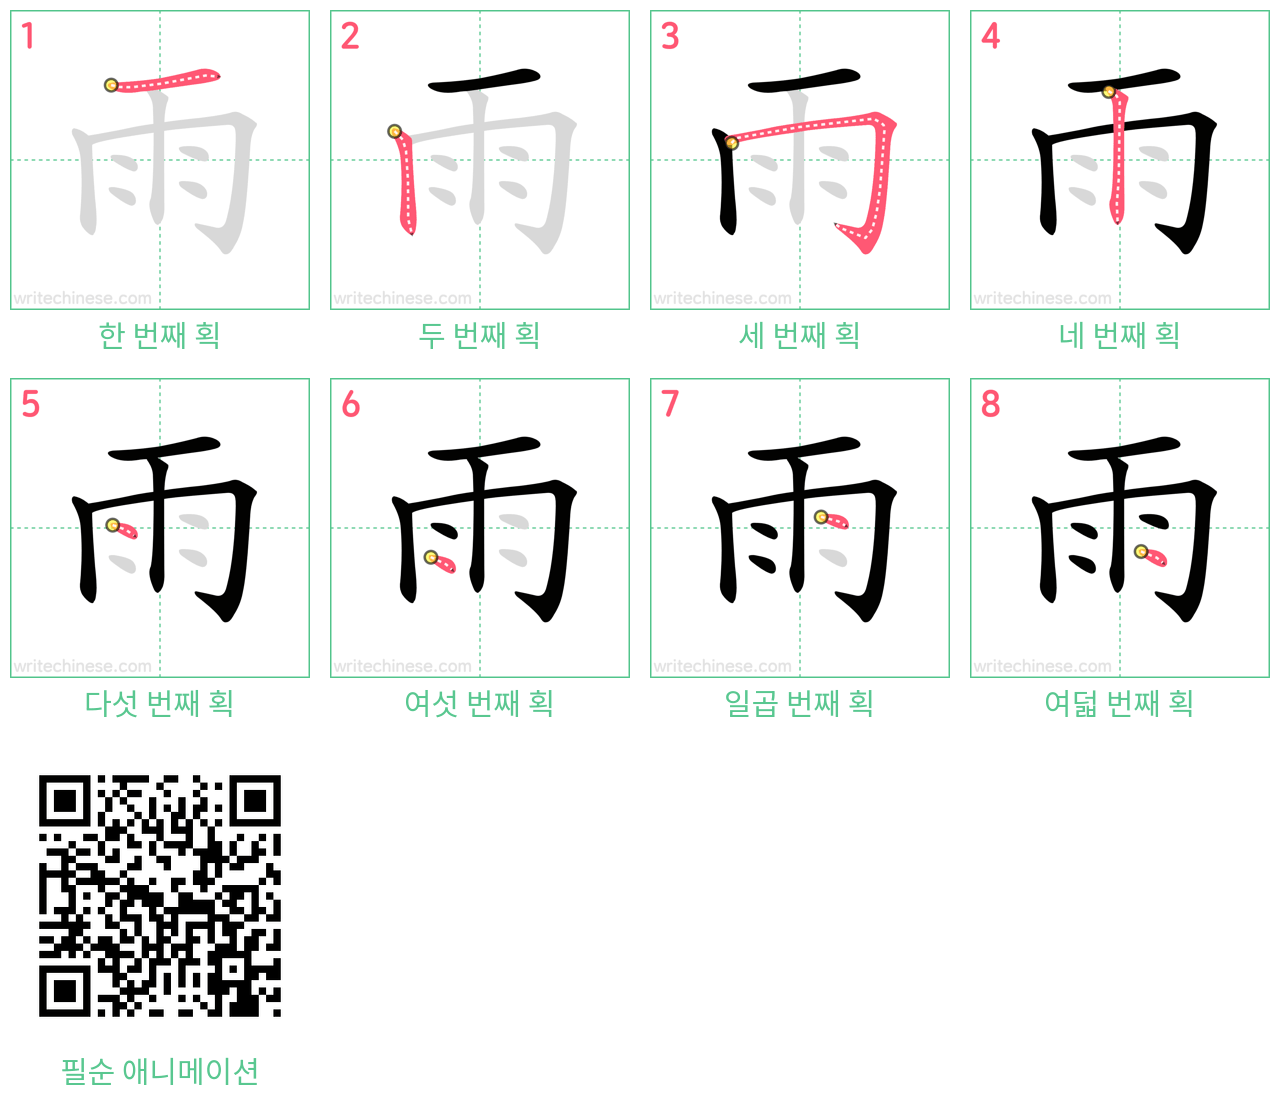 雨 step-by-step stroke order diagrams